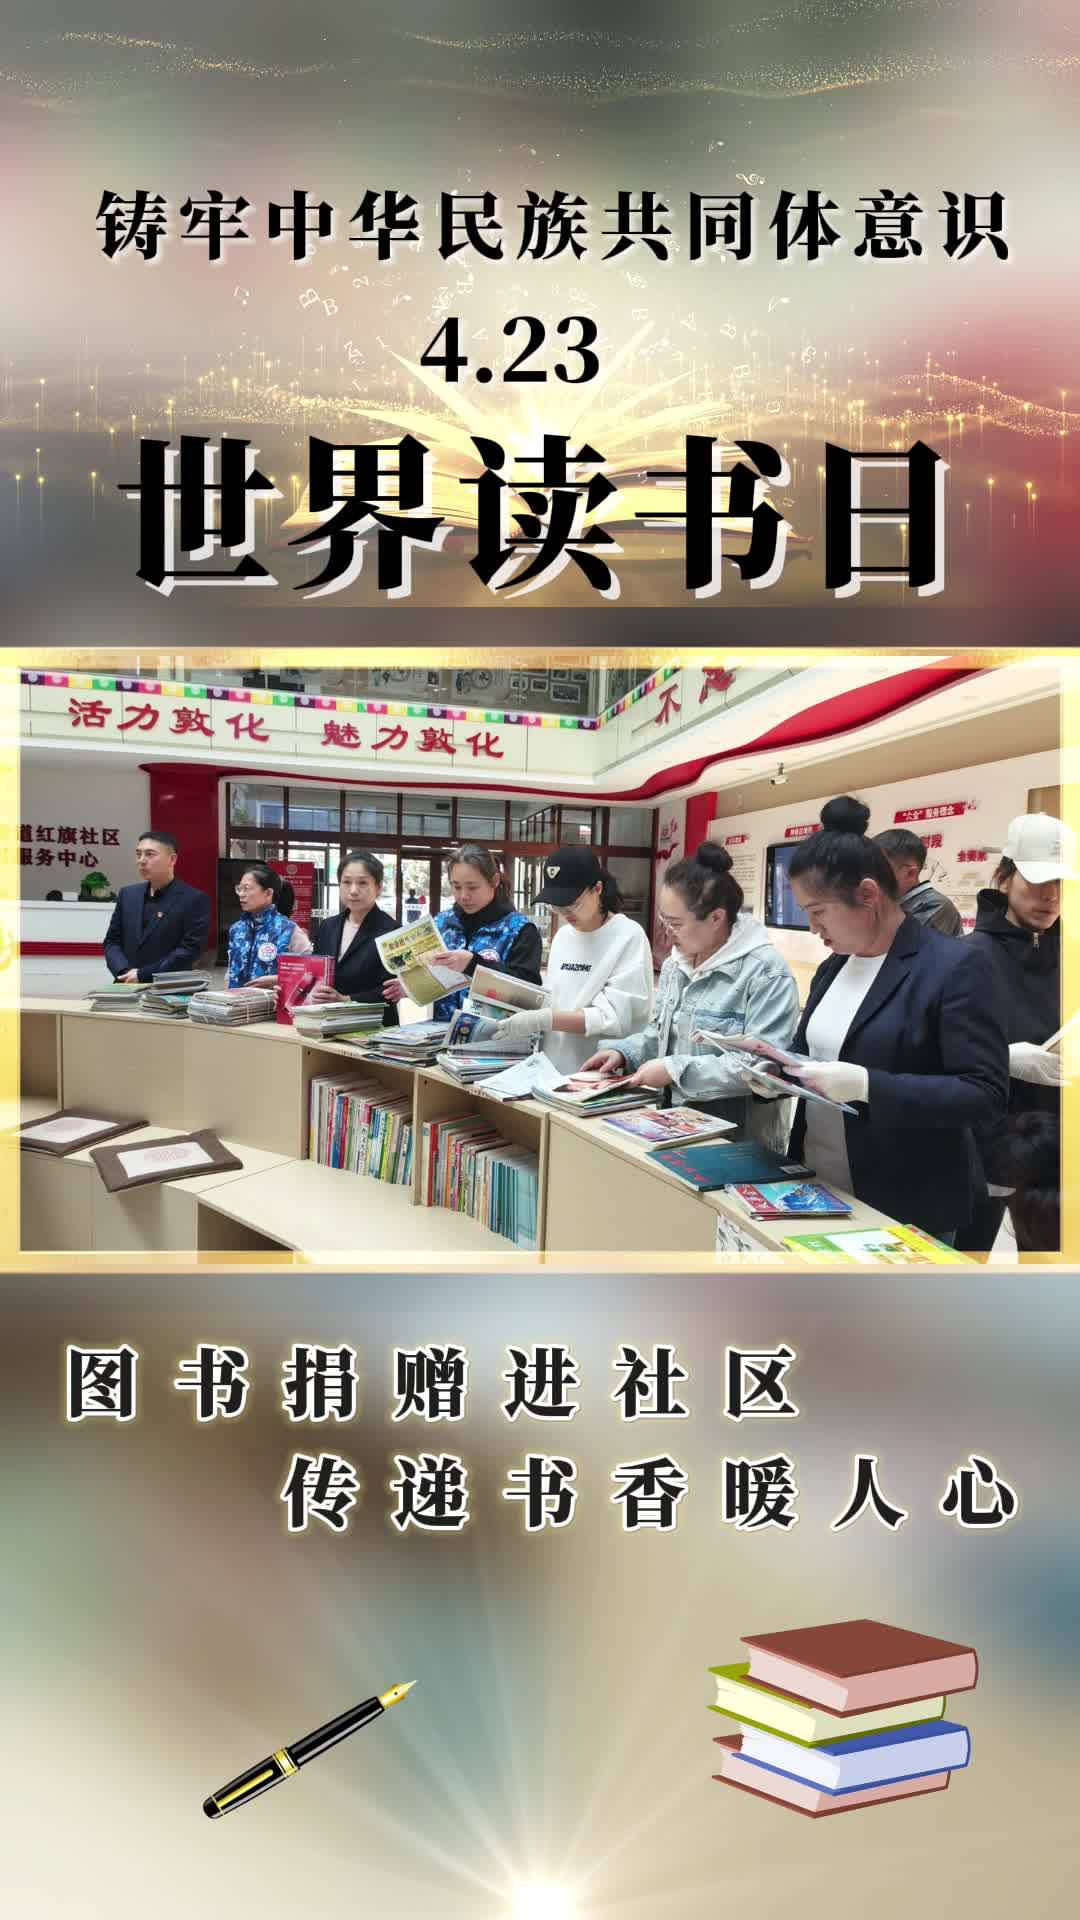 铸牢中华民族共同体意识 图书捐赠进社区 传递书香暖人心 “敦化市图书馆为红旗社区捐赠期刊杂志”